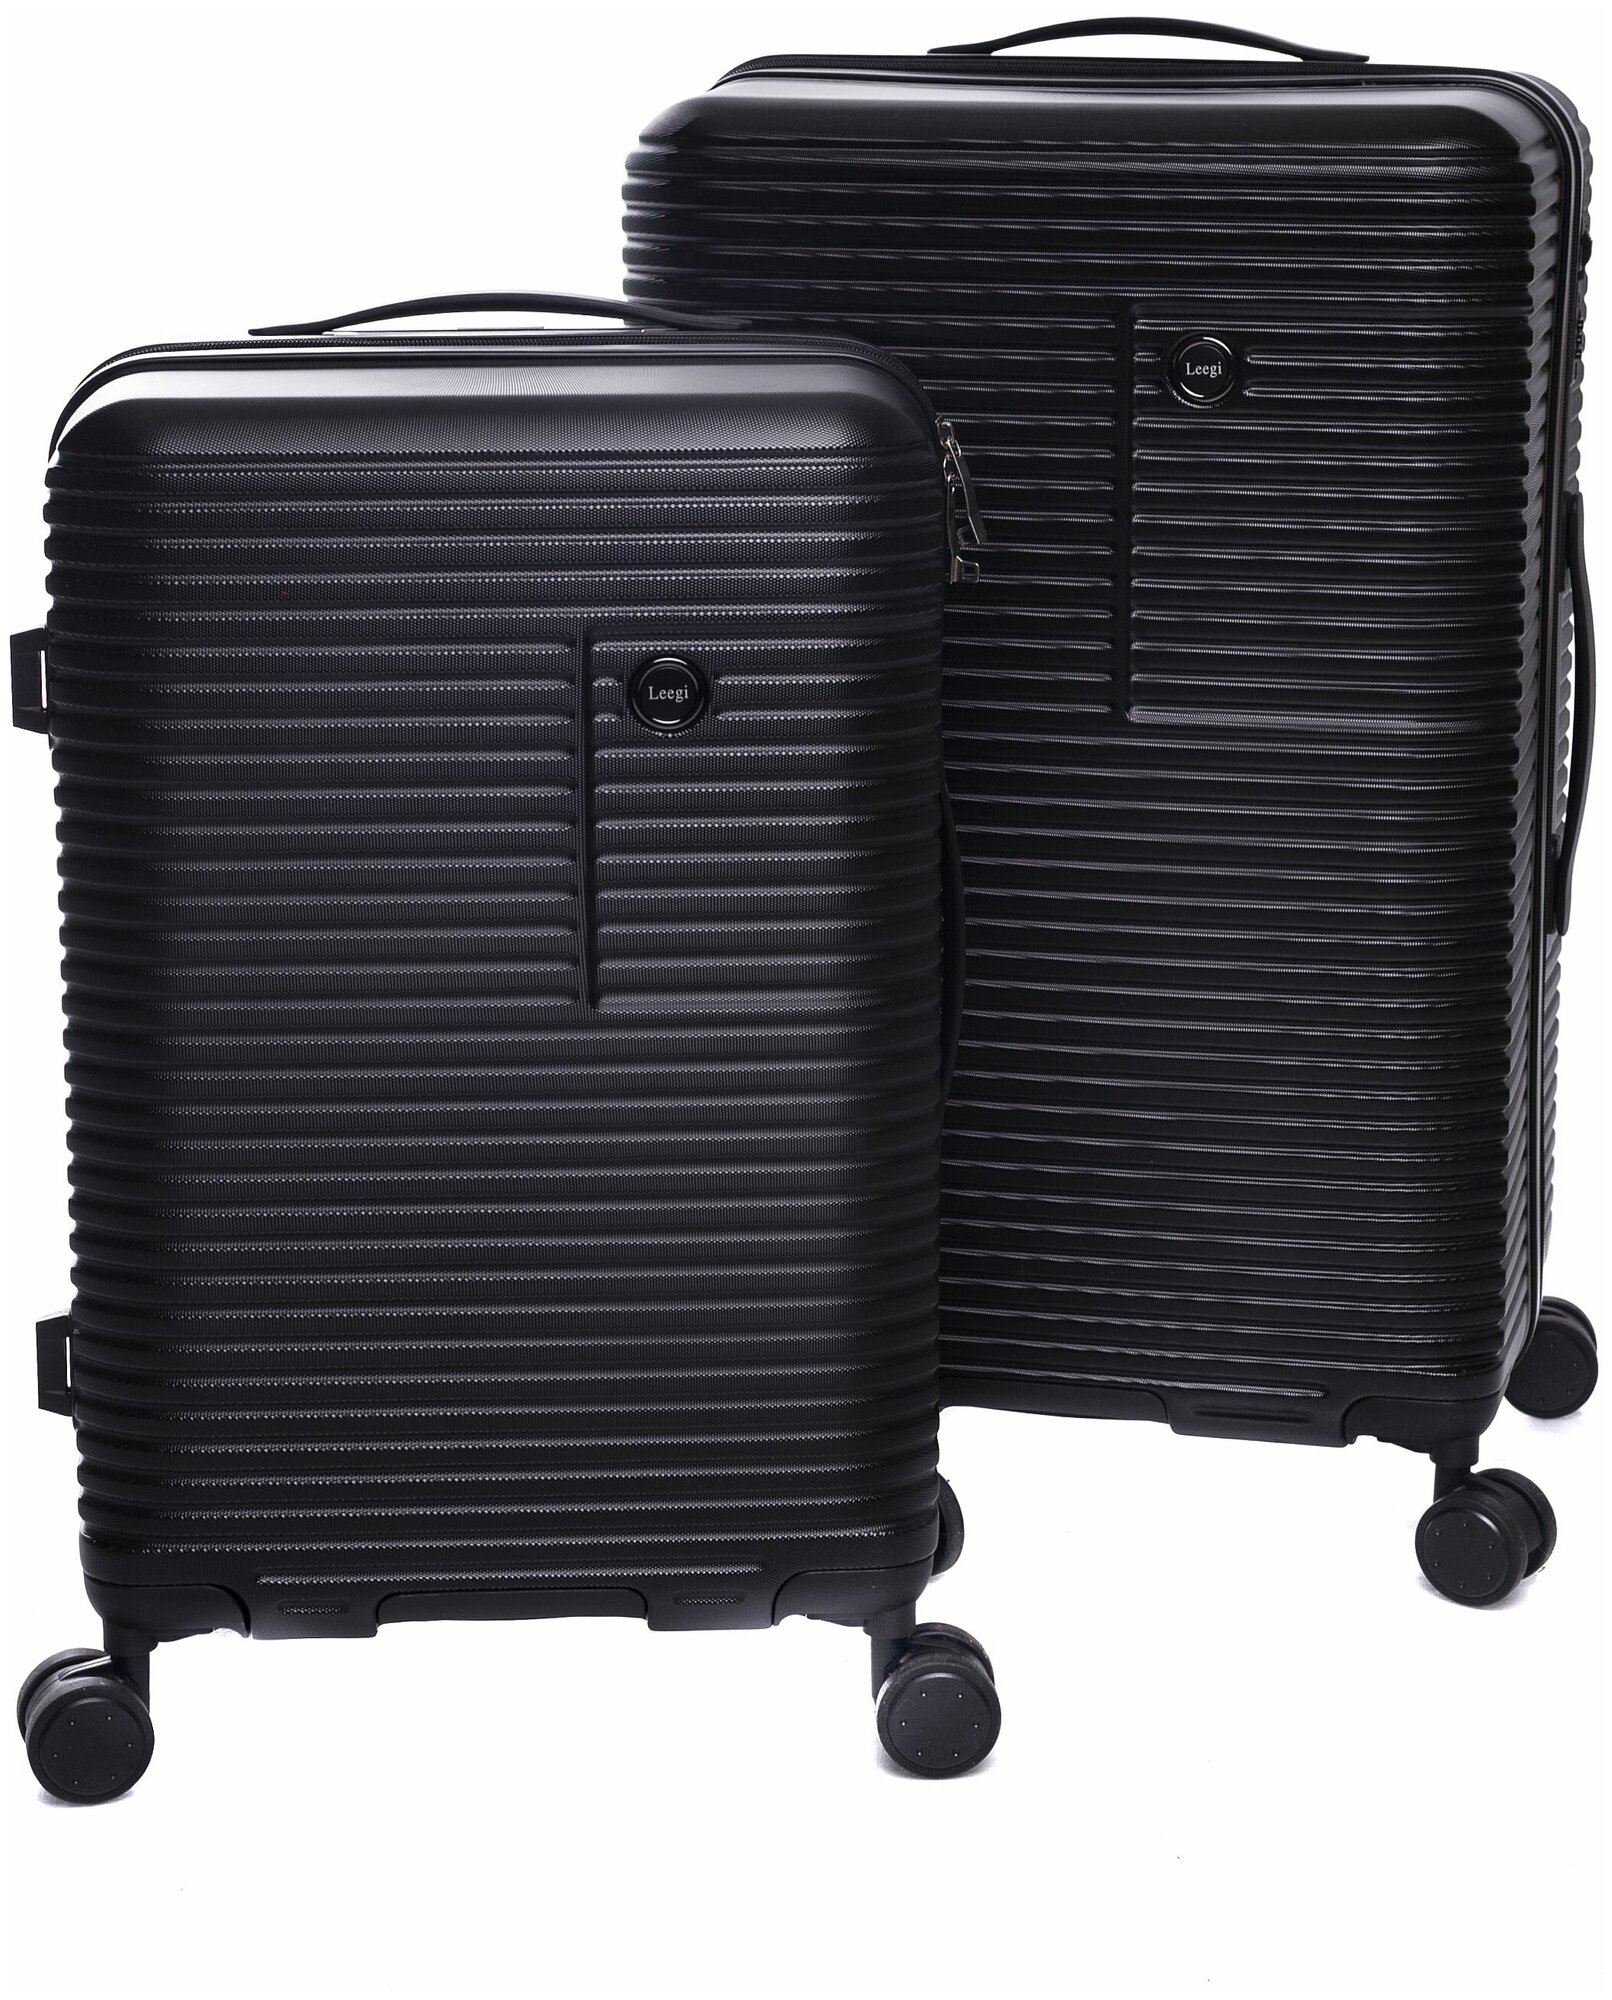 Комплект чемоданов Leegi